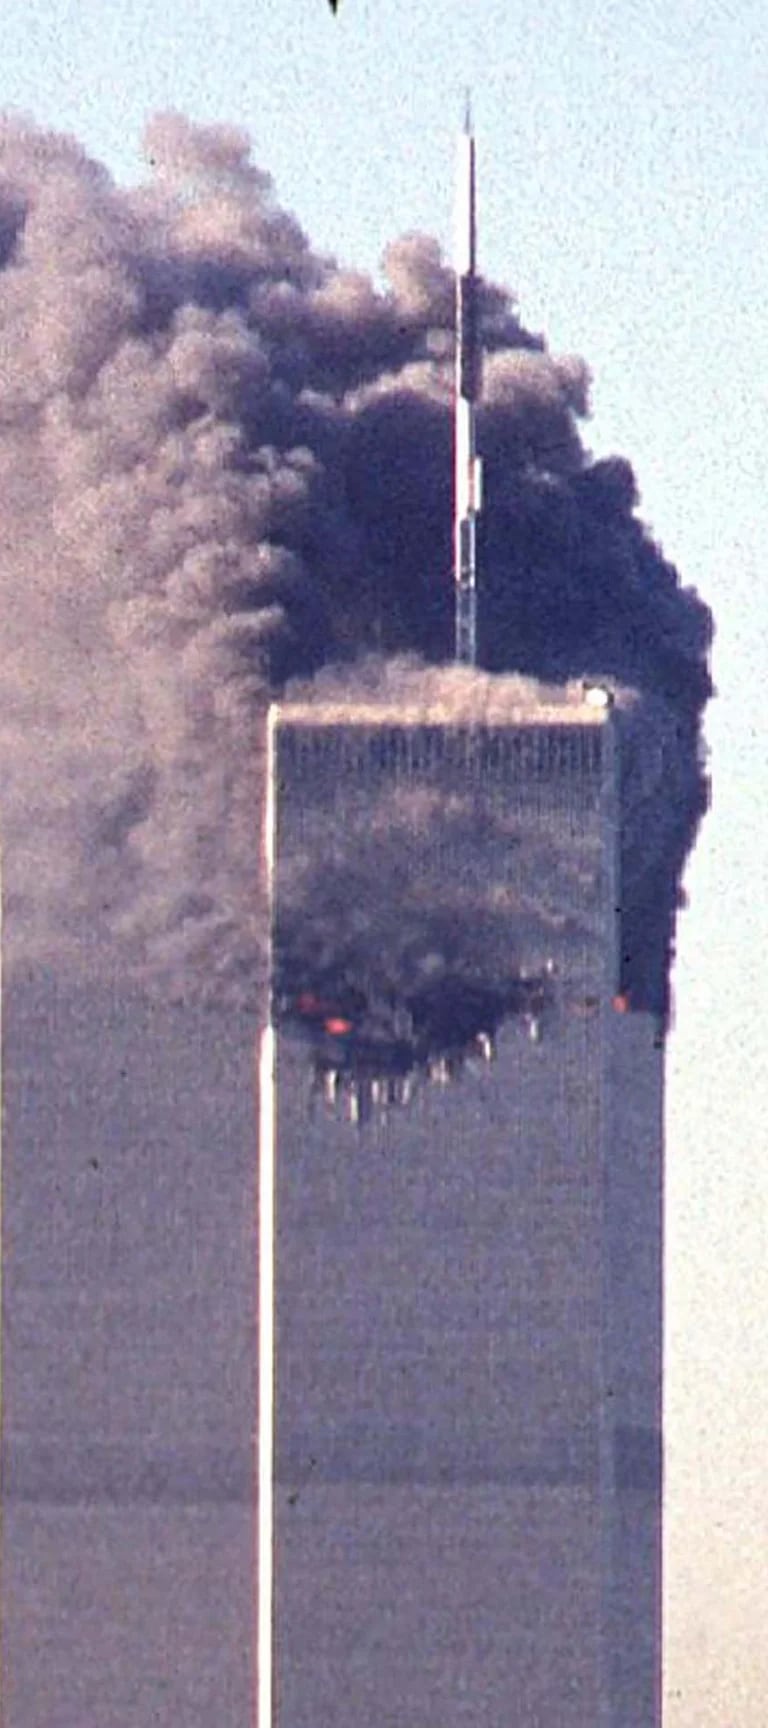 Las 29 imágenes más impactantes del ataque terrorista del 11 de septiembre  imposibles de olvidar - Infobae